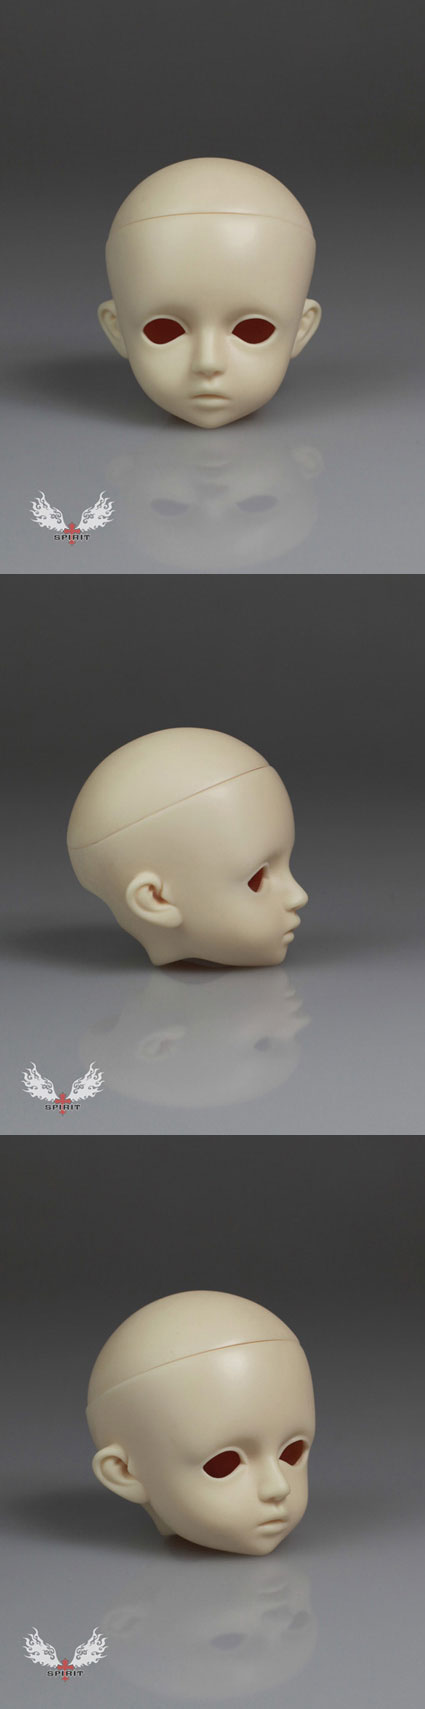 球体関節人形用 ドールヘッド  Mint/Bluebell head